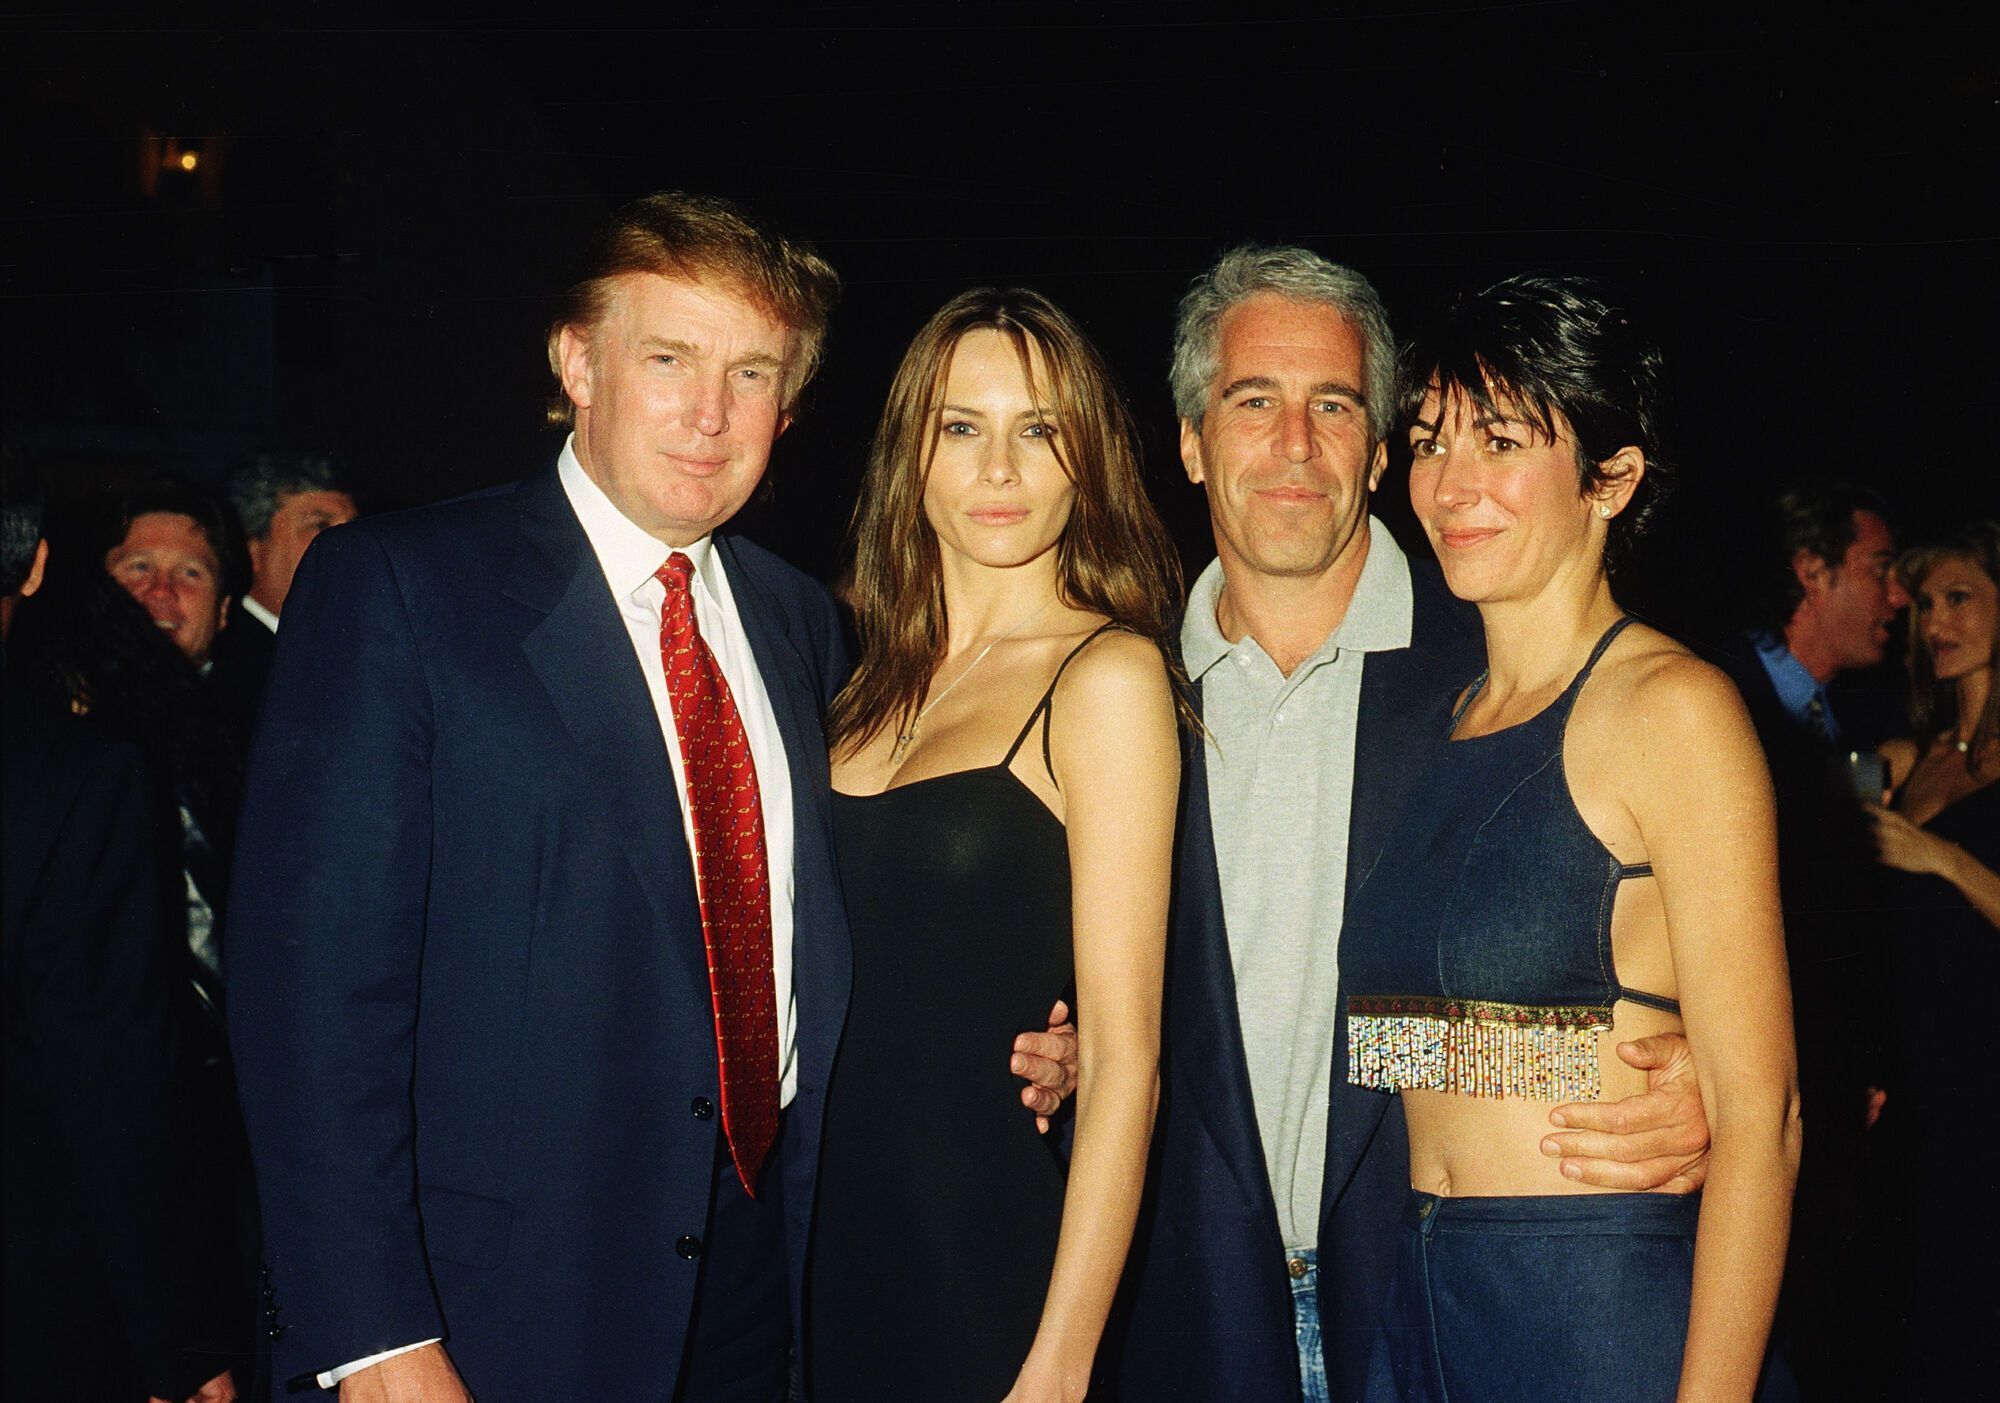 Дональд Трамп и его девушка (будущая жена), бывшая модель Мелания, финансист (и будущий осужденный за сексуальные преступления) Джеффри Эпштейн и британская светская львица Гислен Максвелл позируют вместе в клубе Mar-a-Lago